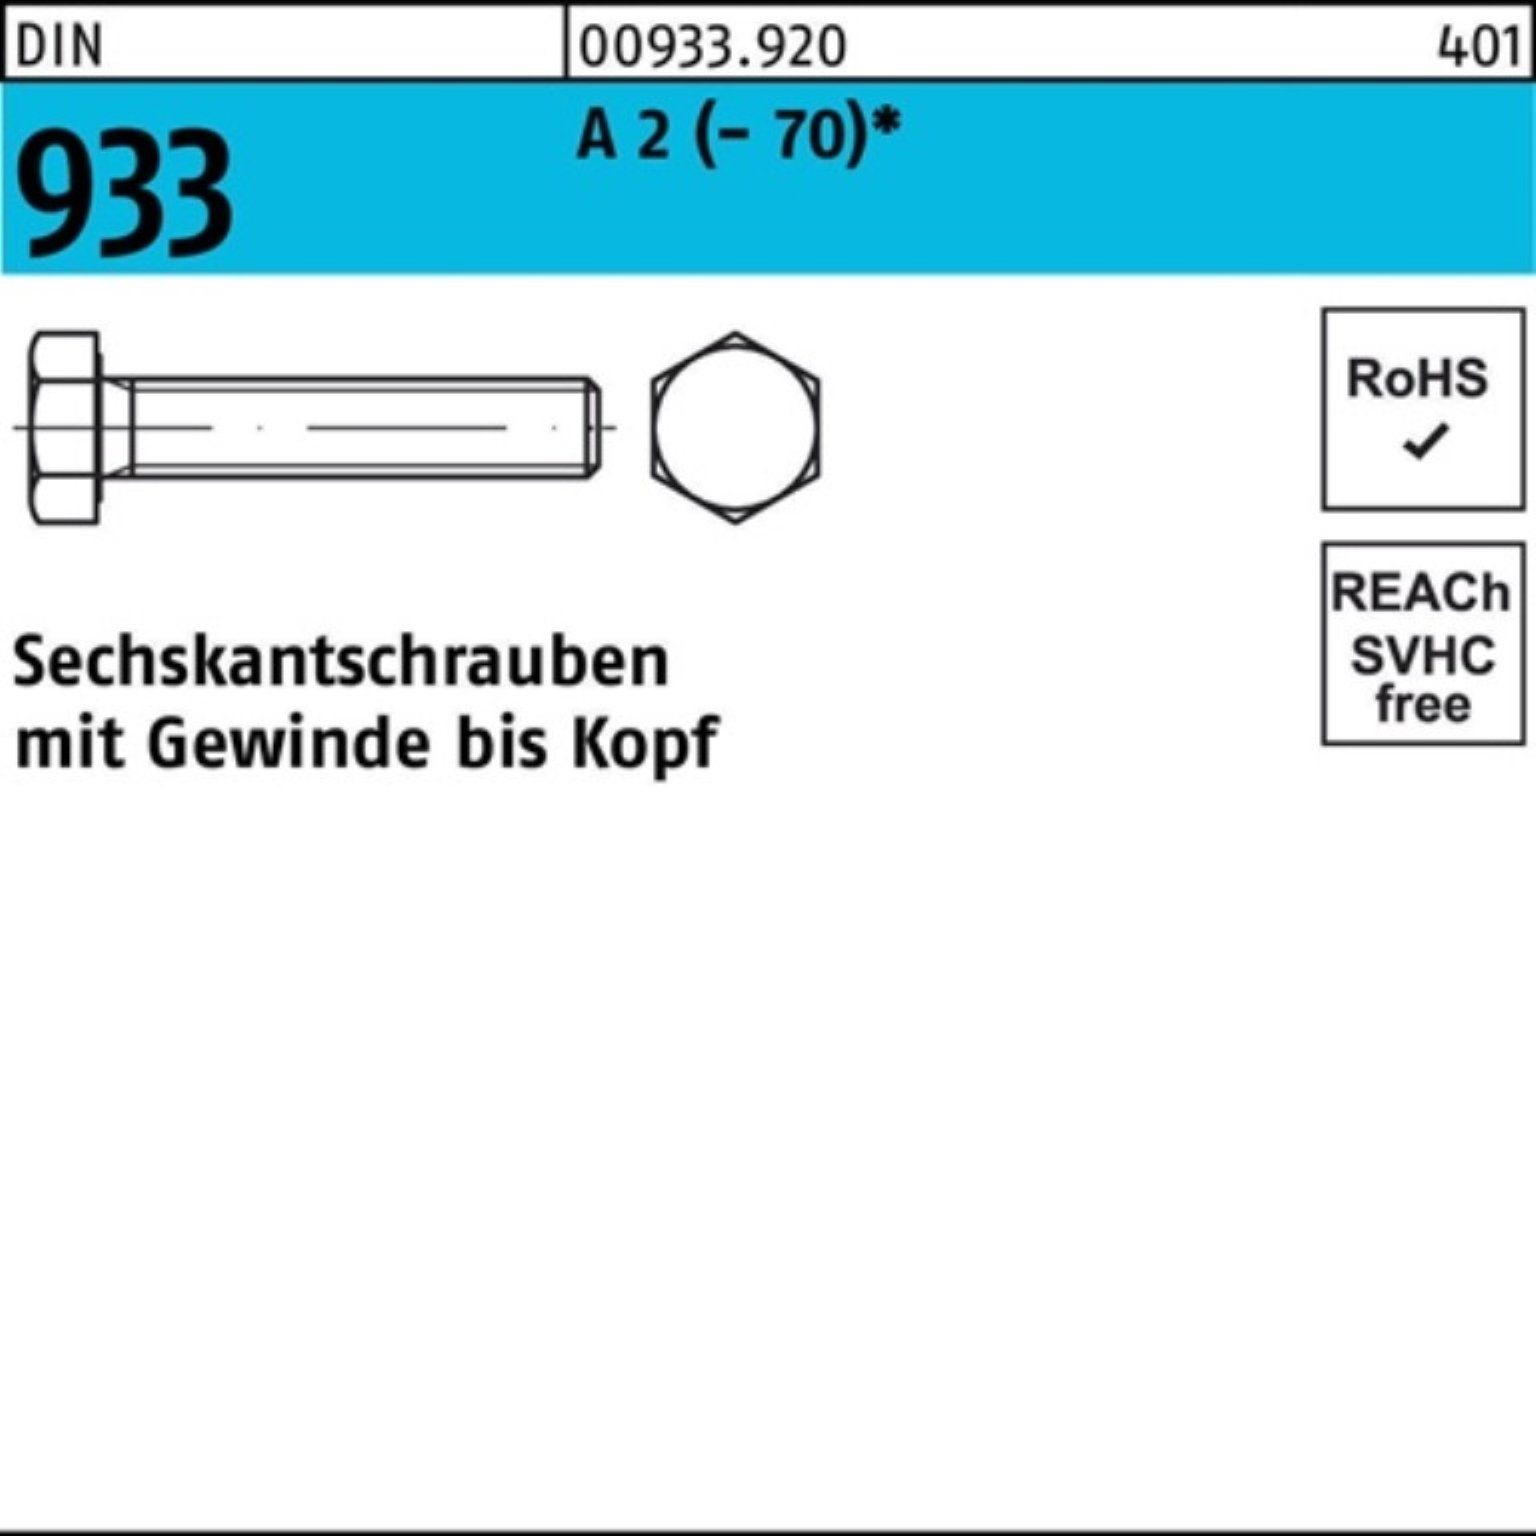 A Sechskantschraube D Reyher M18x DIN 25 40 (70) Stück Pack 933 100er 2 VG Sechskantschraube